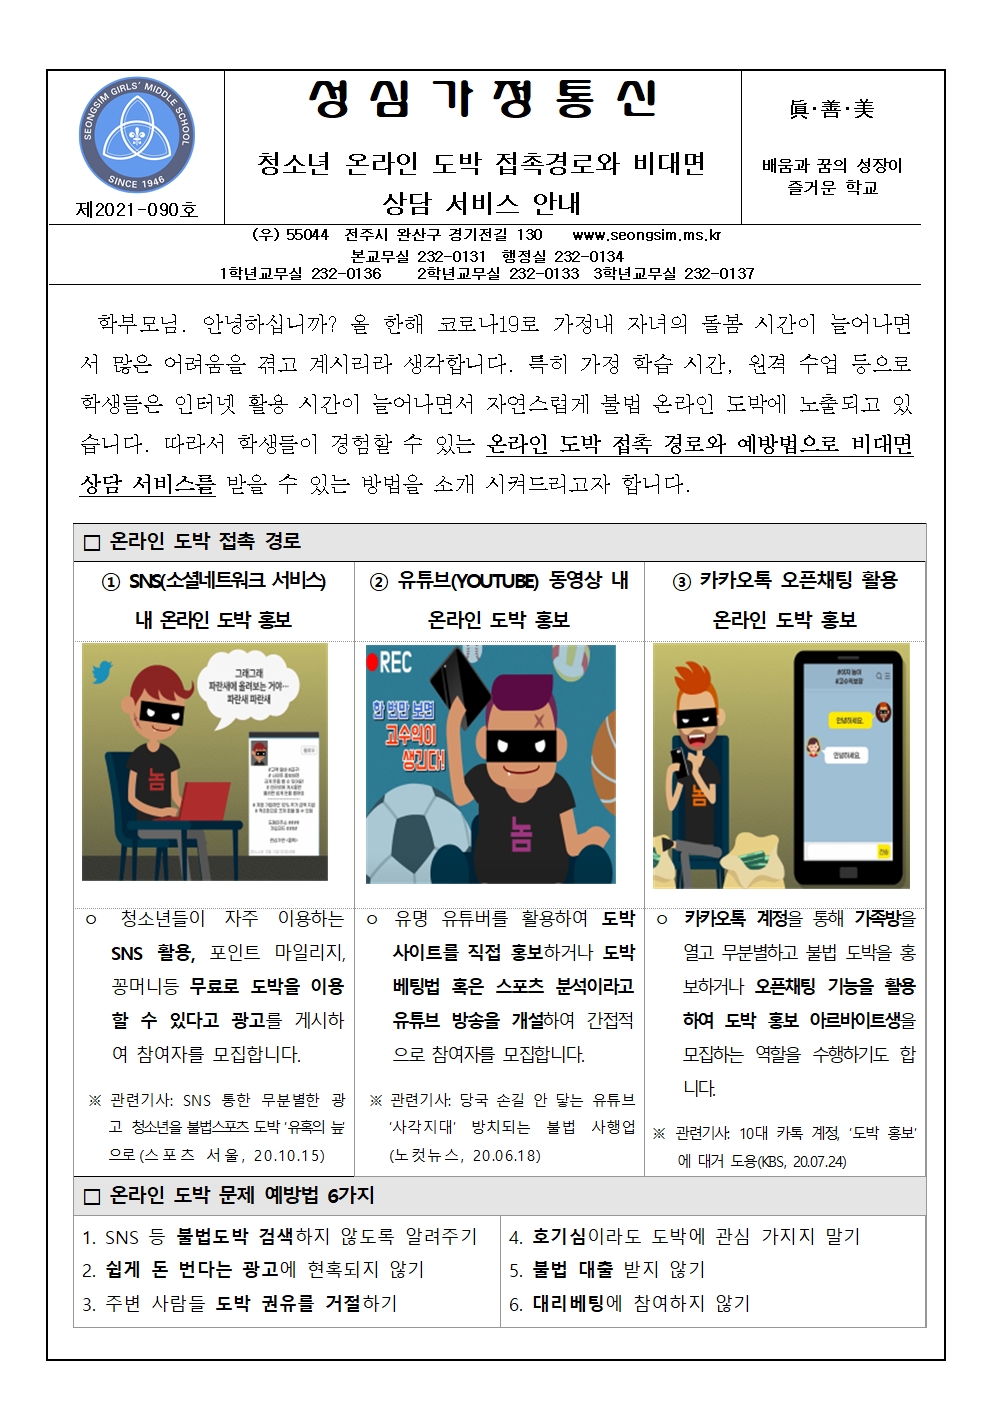 2021-090 청소년 도박문제 예방 가정통신문001